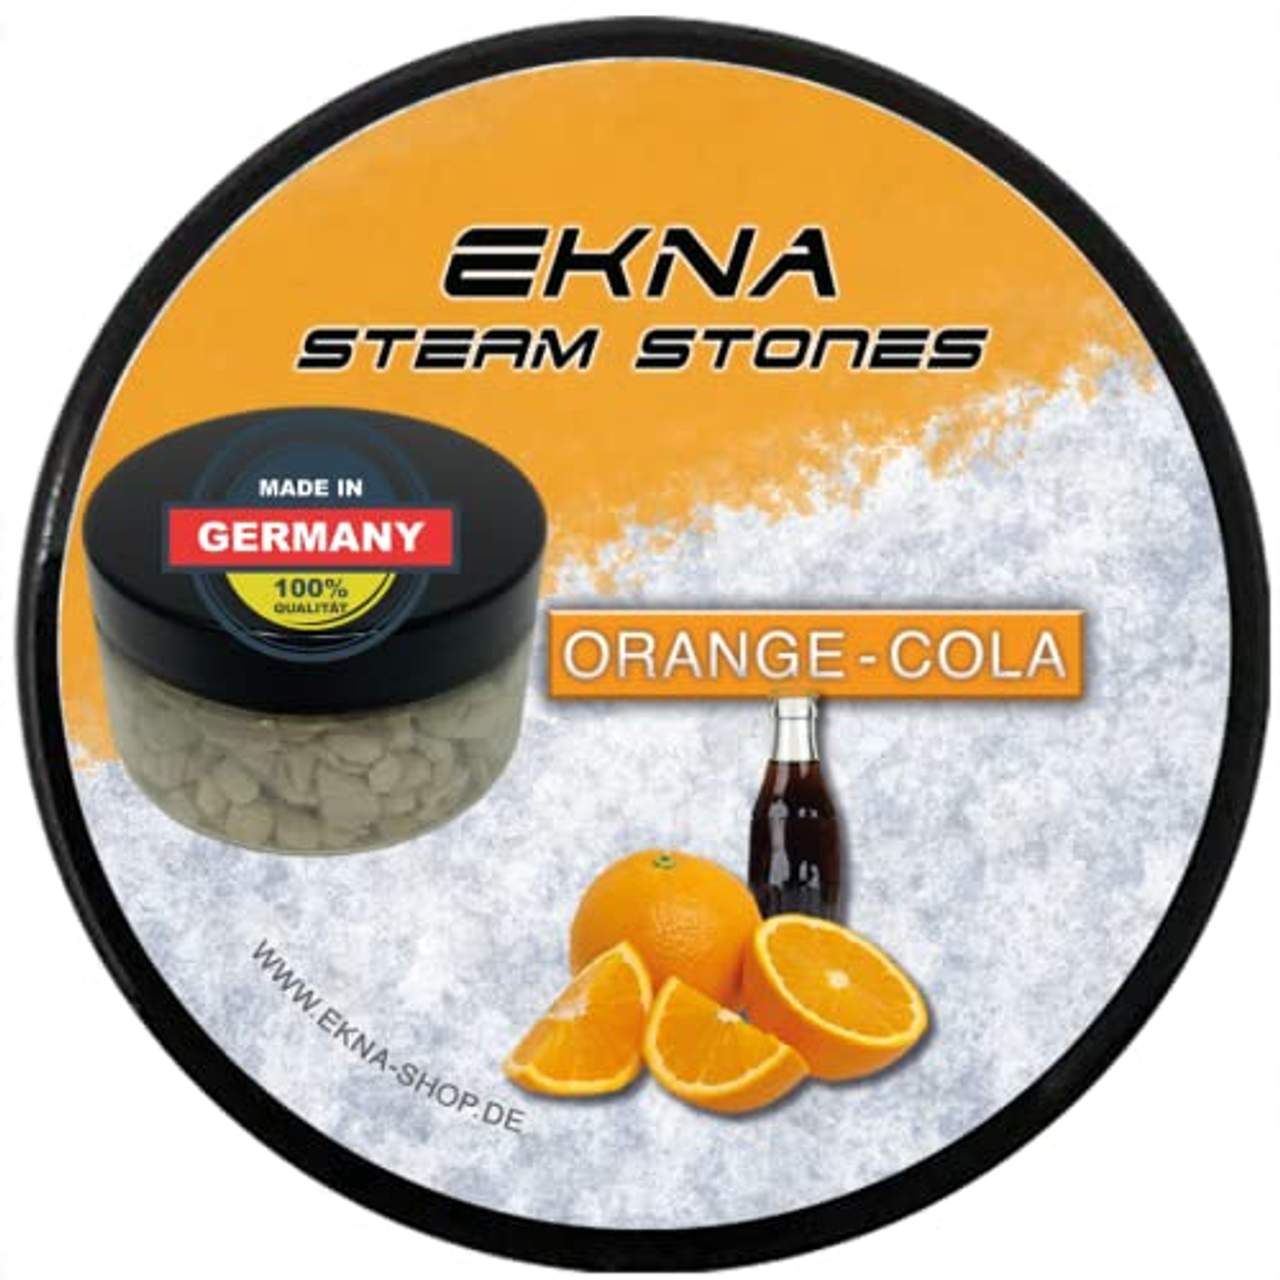 EKNA SteamStones Orange-Cola 120g